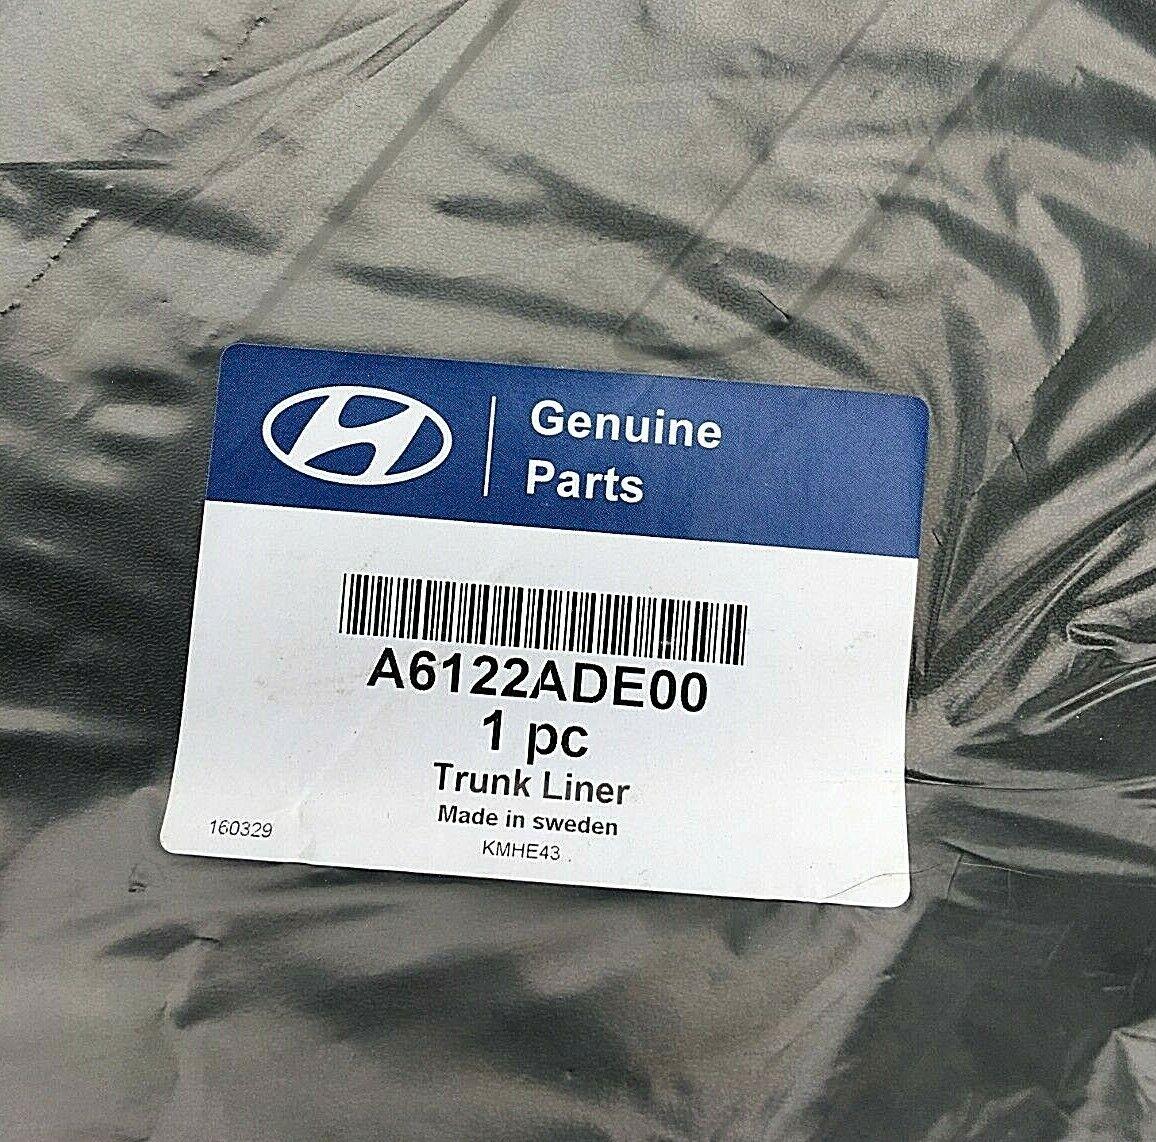 Vasca baule bagagliaio originale accessori Hyundai i30 GD (2012-2015) A6122ADE00